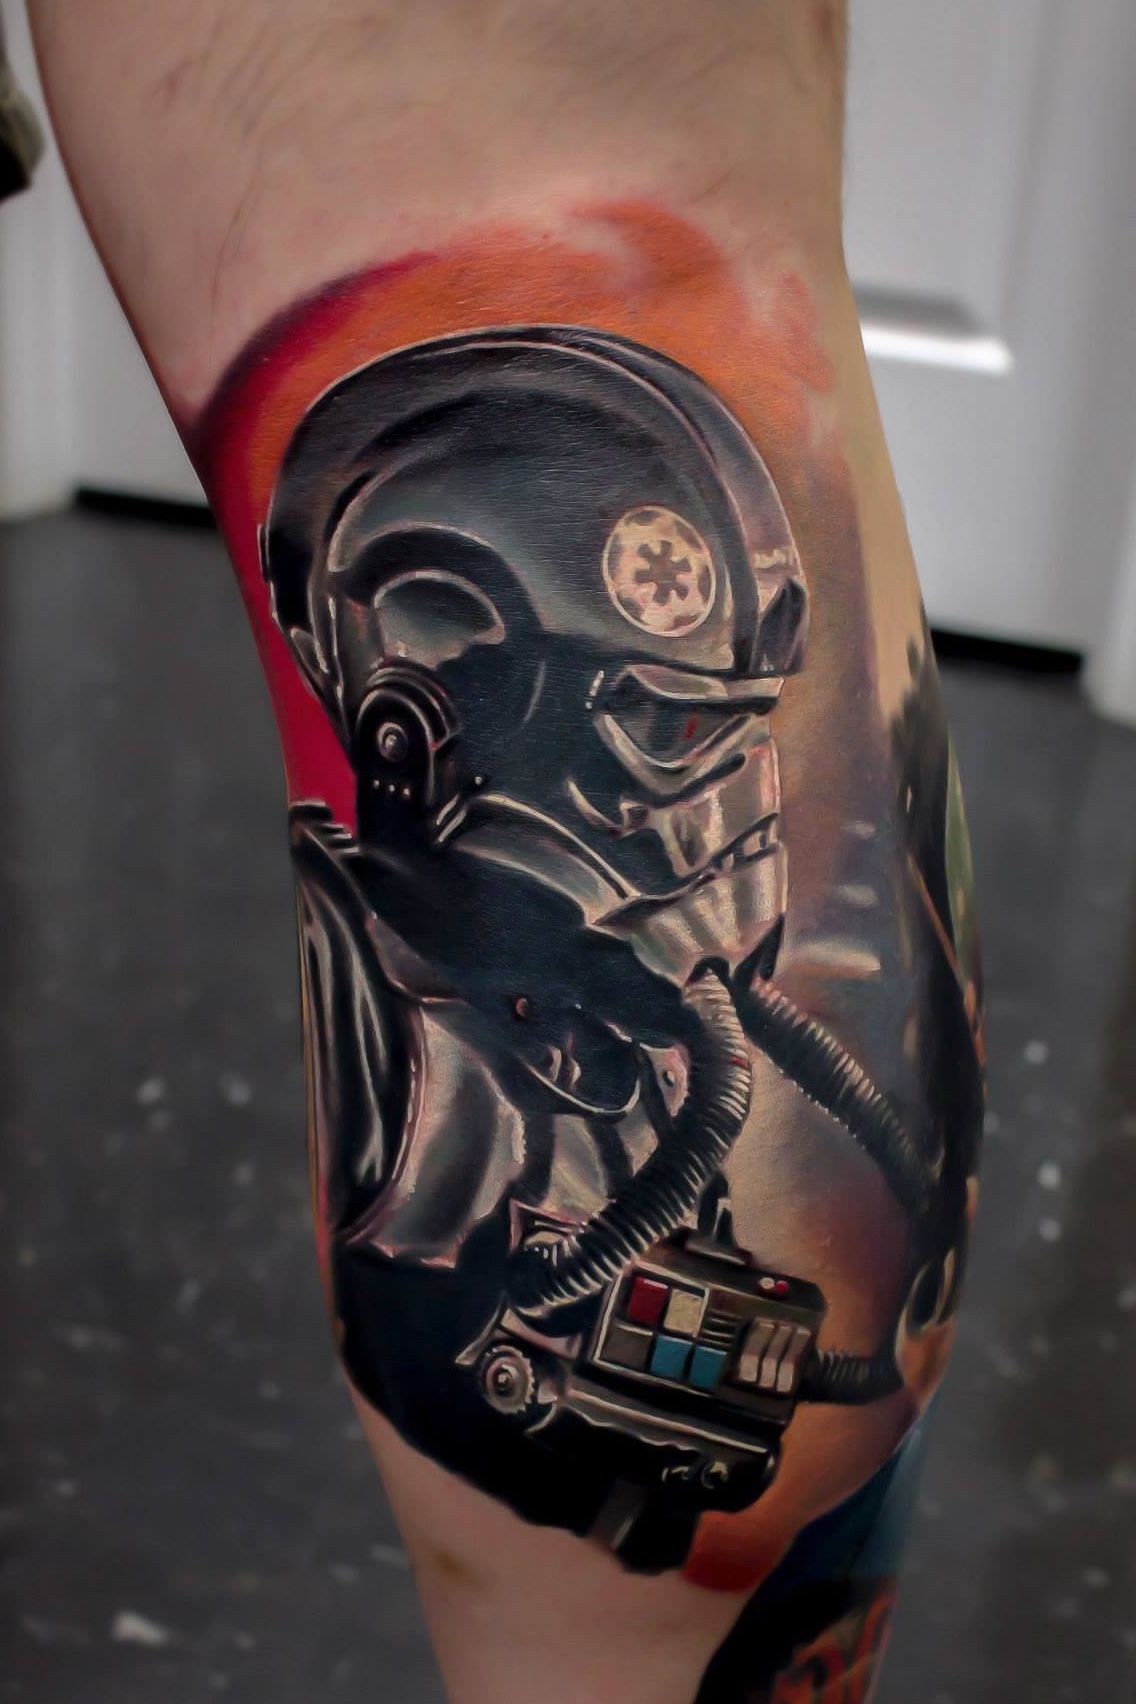 Tattoo uploaded by Jerry Pipkins • Star Wars Tie Fighter pilot #starwars • Tattoodo